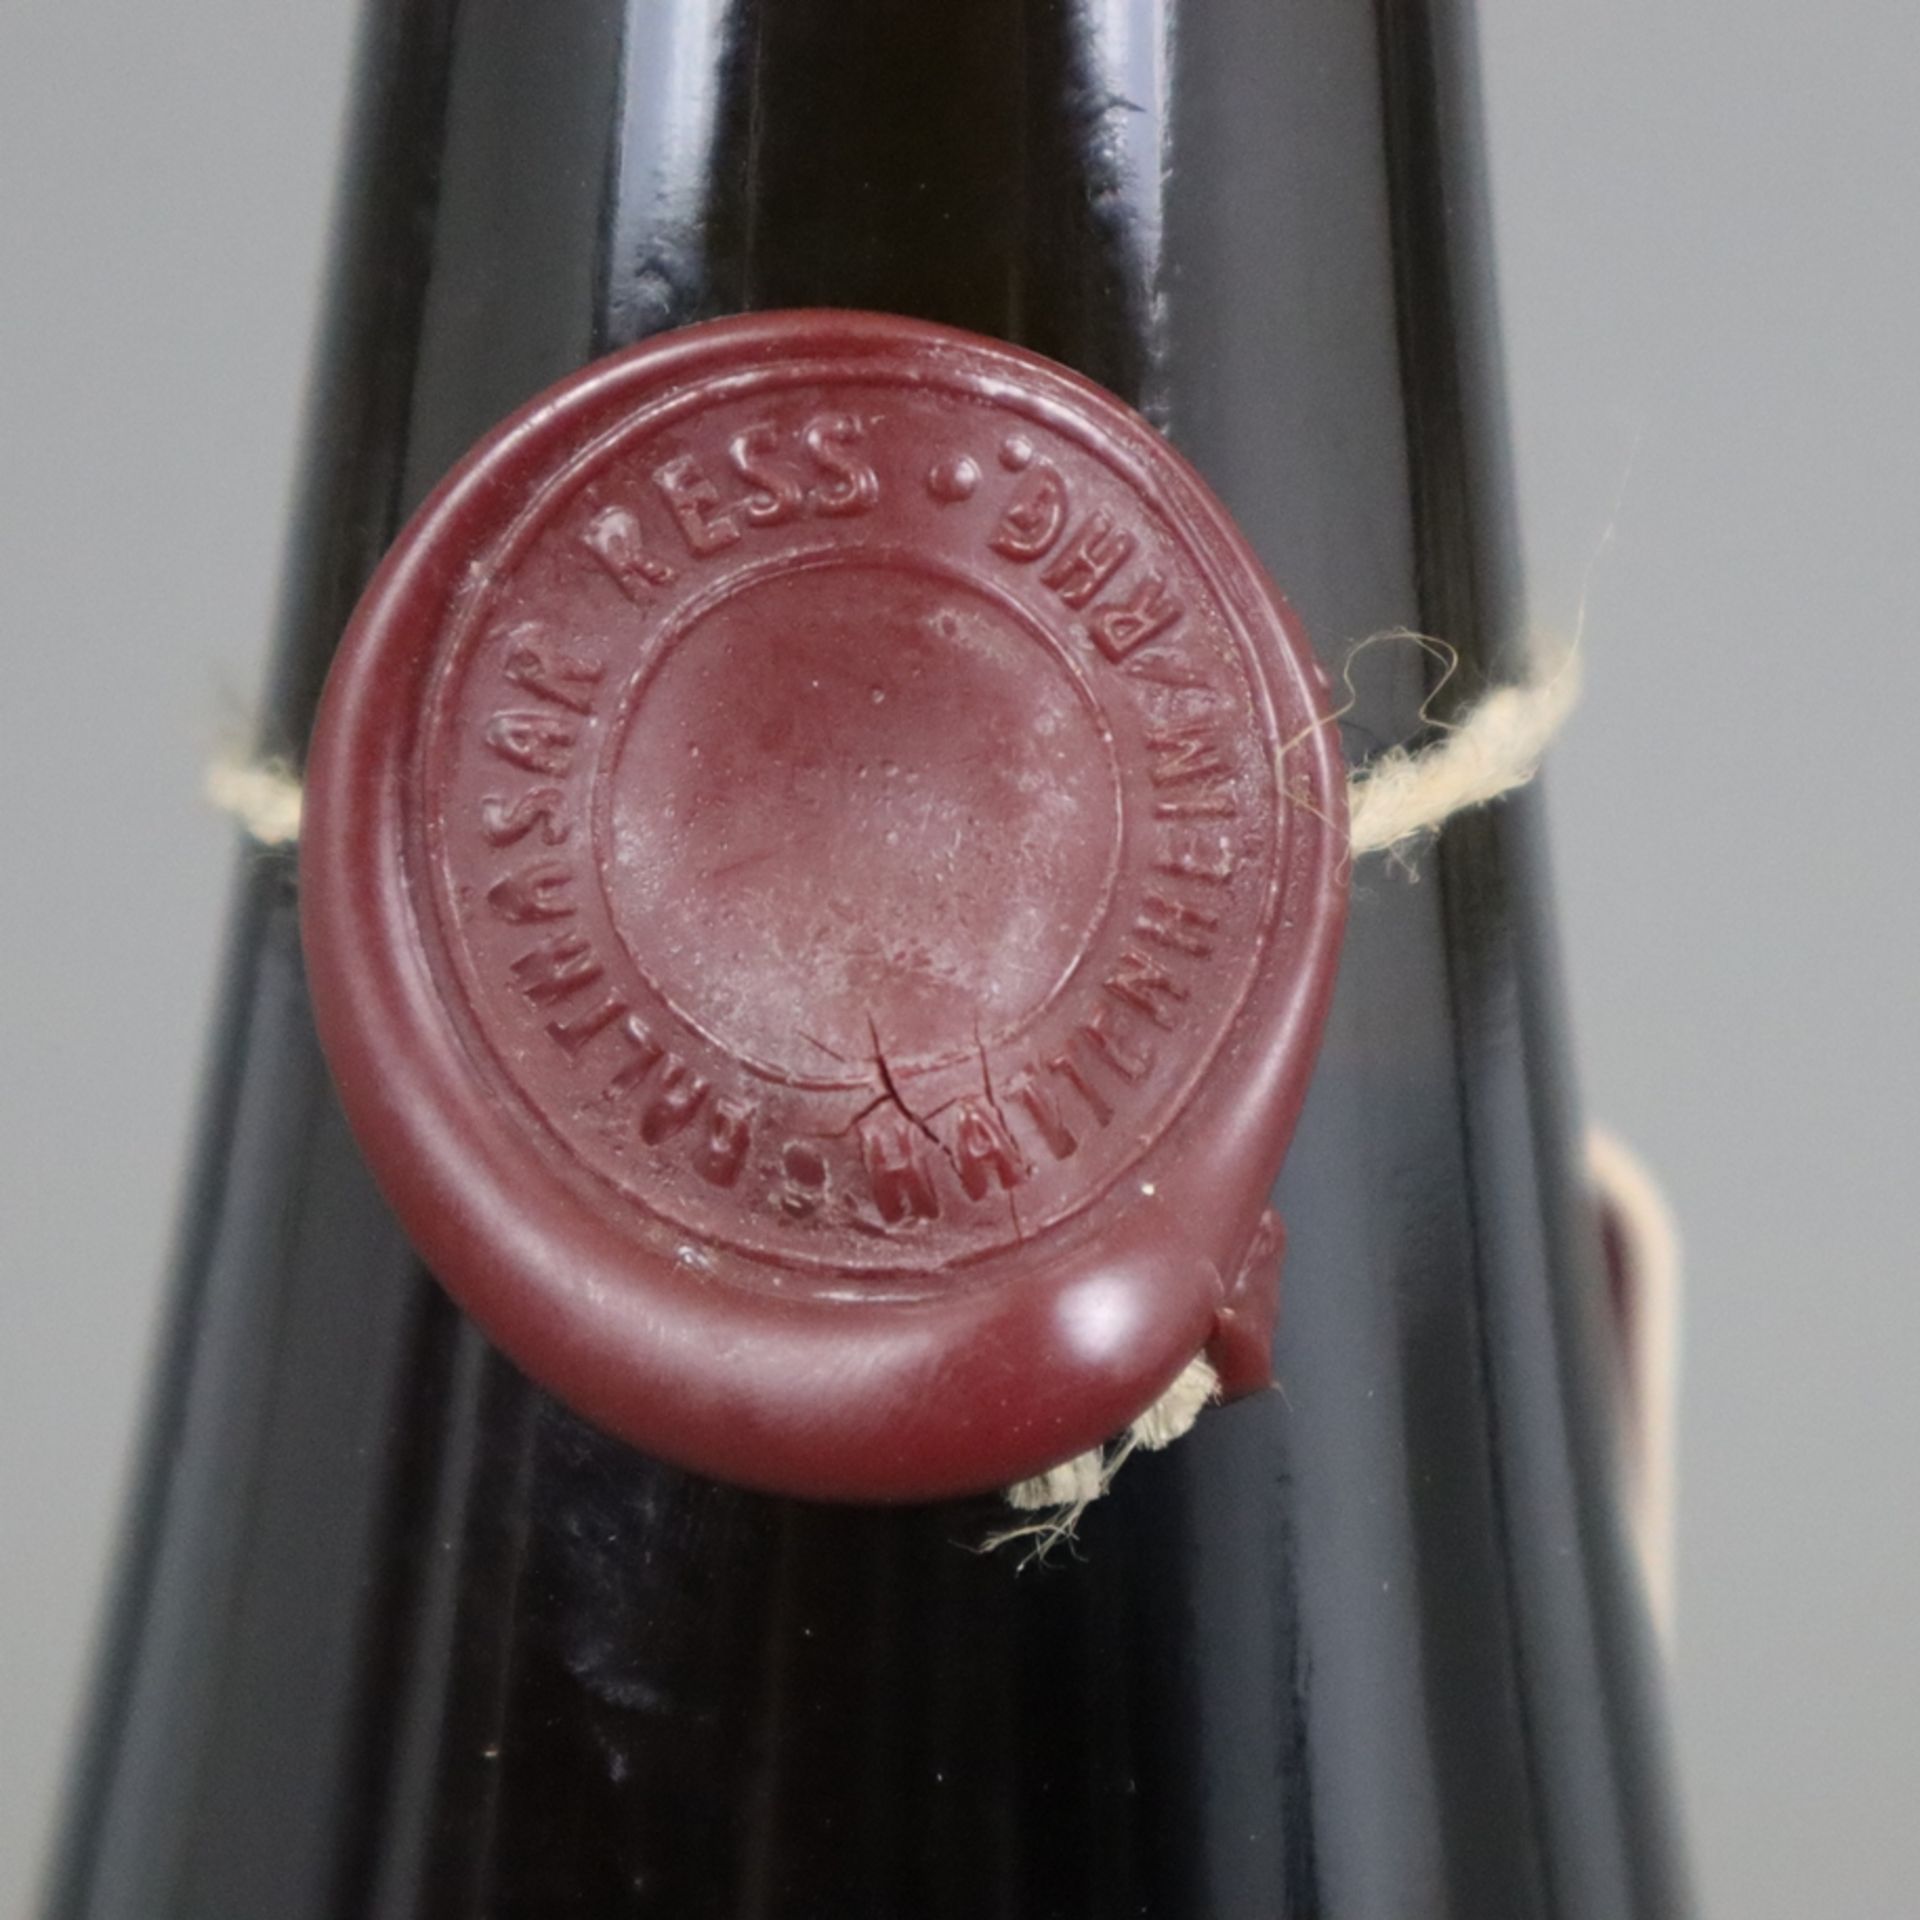 Wein - 2010 „RESSpekt“ Rheingau Riesling, 1,5 l Magnum, Füllstand: High Fill, Flasche 76/120, mit W - Bild 6 aus 6